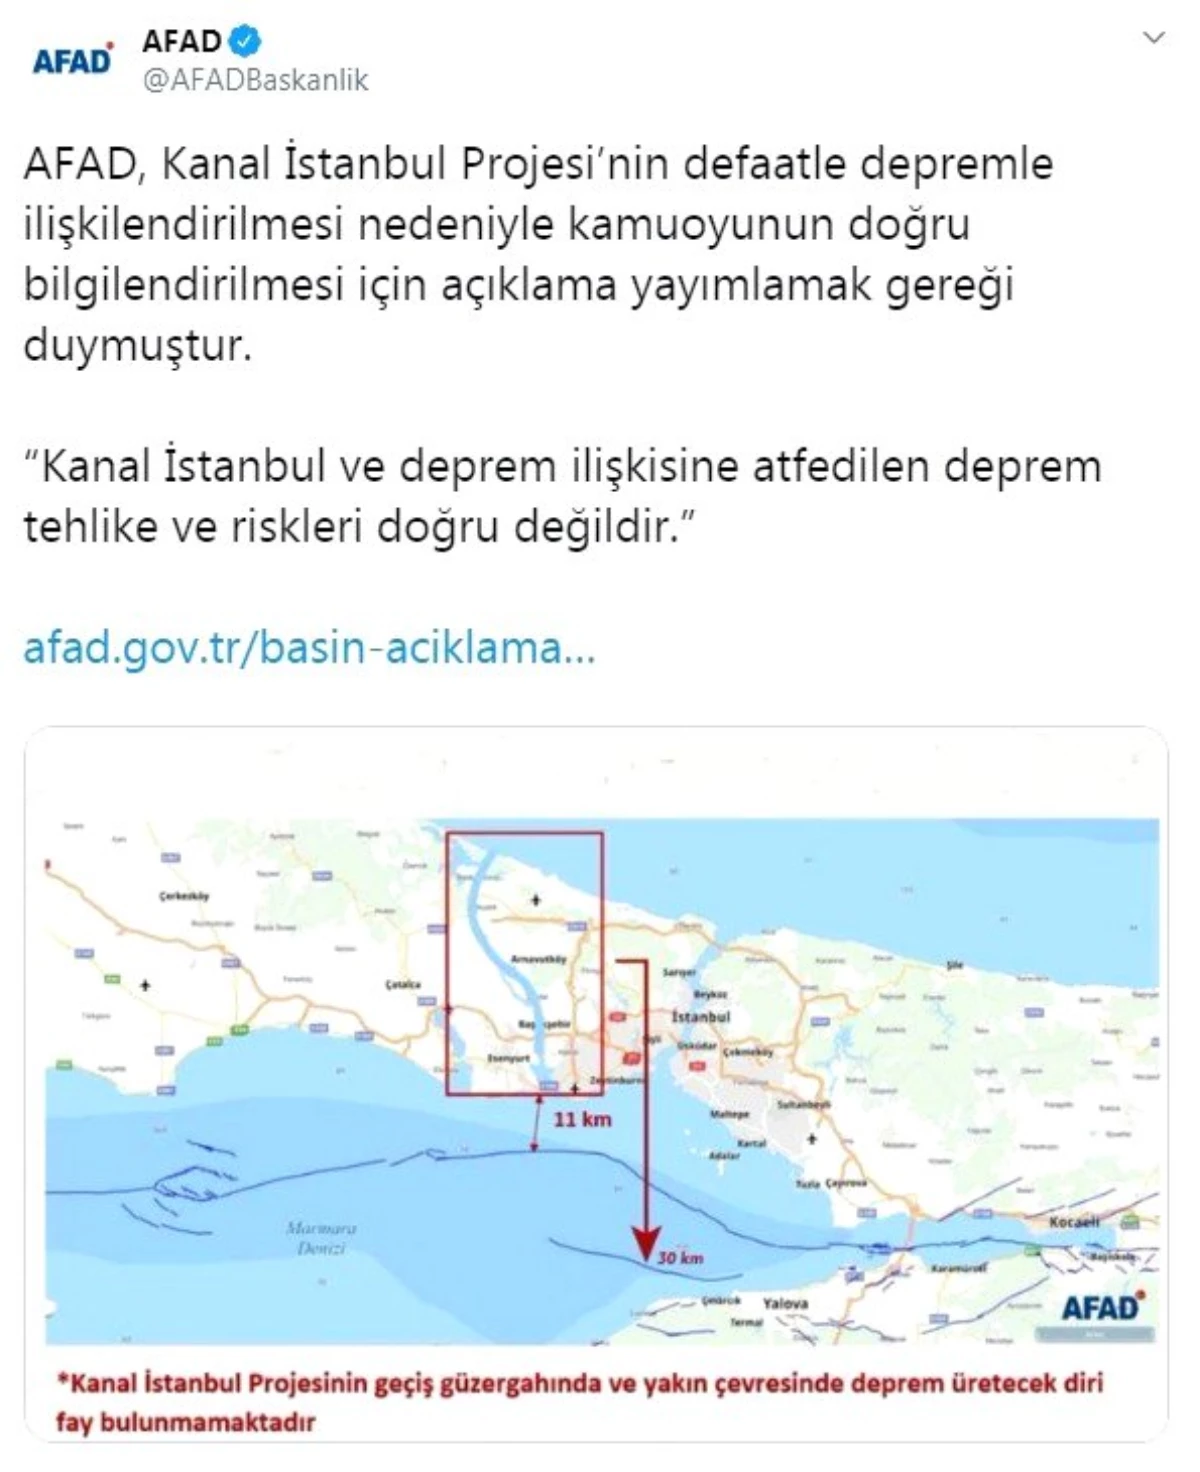 AFAD: "Kanal İstanbul ve deprem ilişkisine atfedilen deprem tehlike ve riskleri doğru değildir"